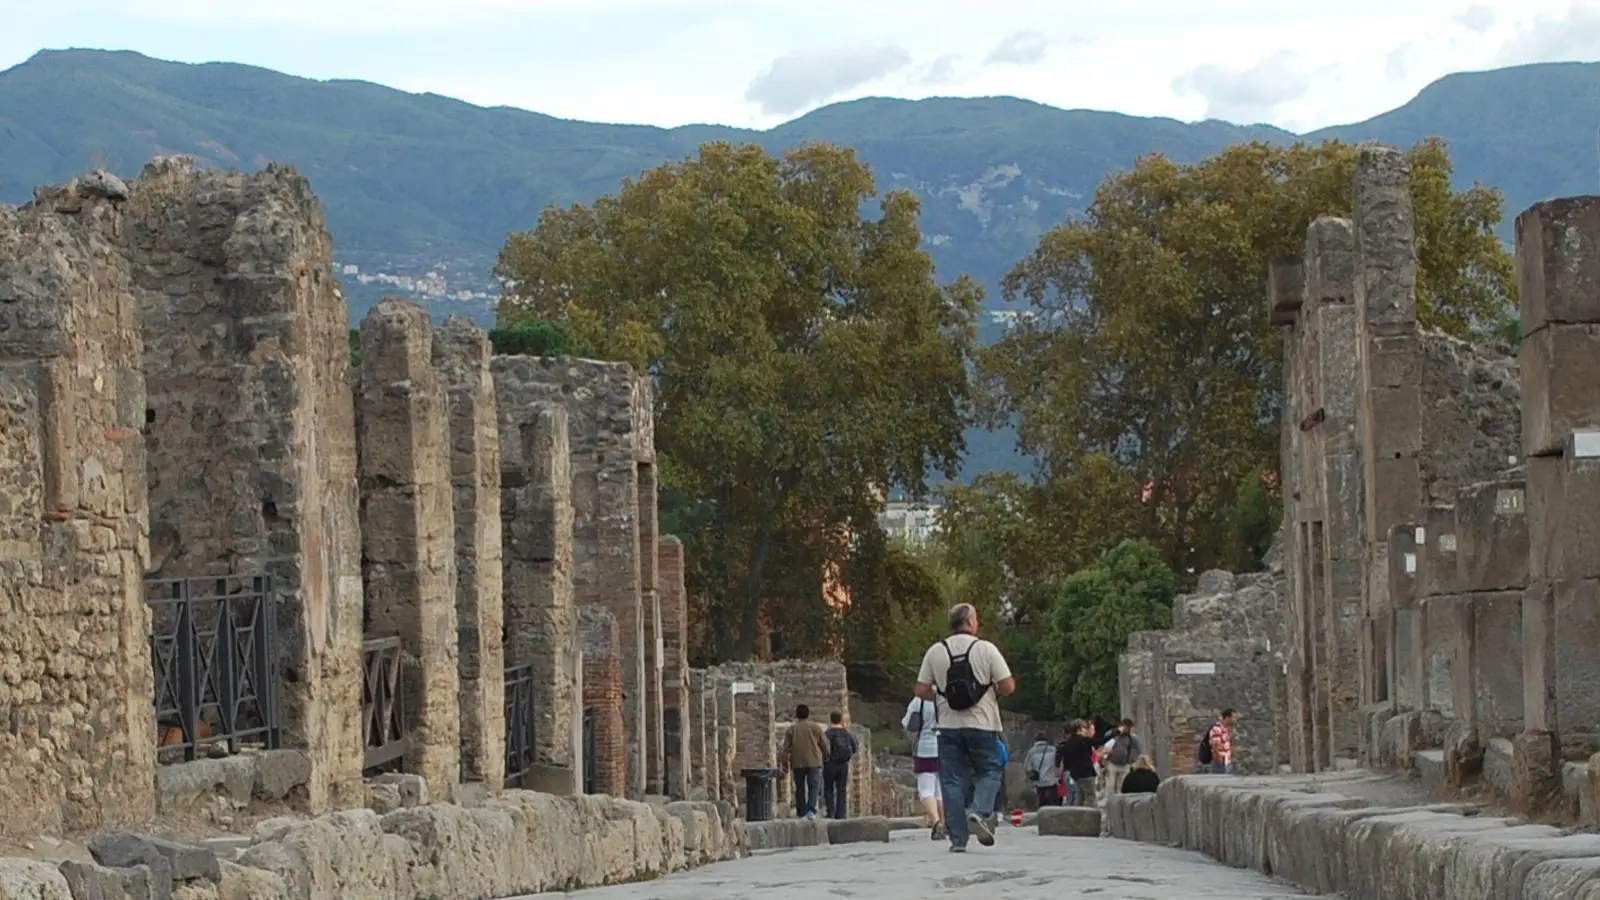 „Pompeji für alle“: Auf der etwa 3,5 Kilometer langen Route können auch Besucherinnen und Besucher mit Gehbeeinträchtigung die Ausgrabungsstätte besichtigen. (Foto: Andreas Heimann/dpa-tmn)